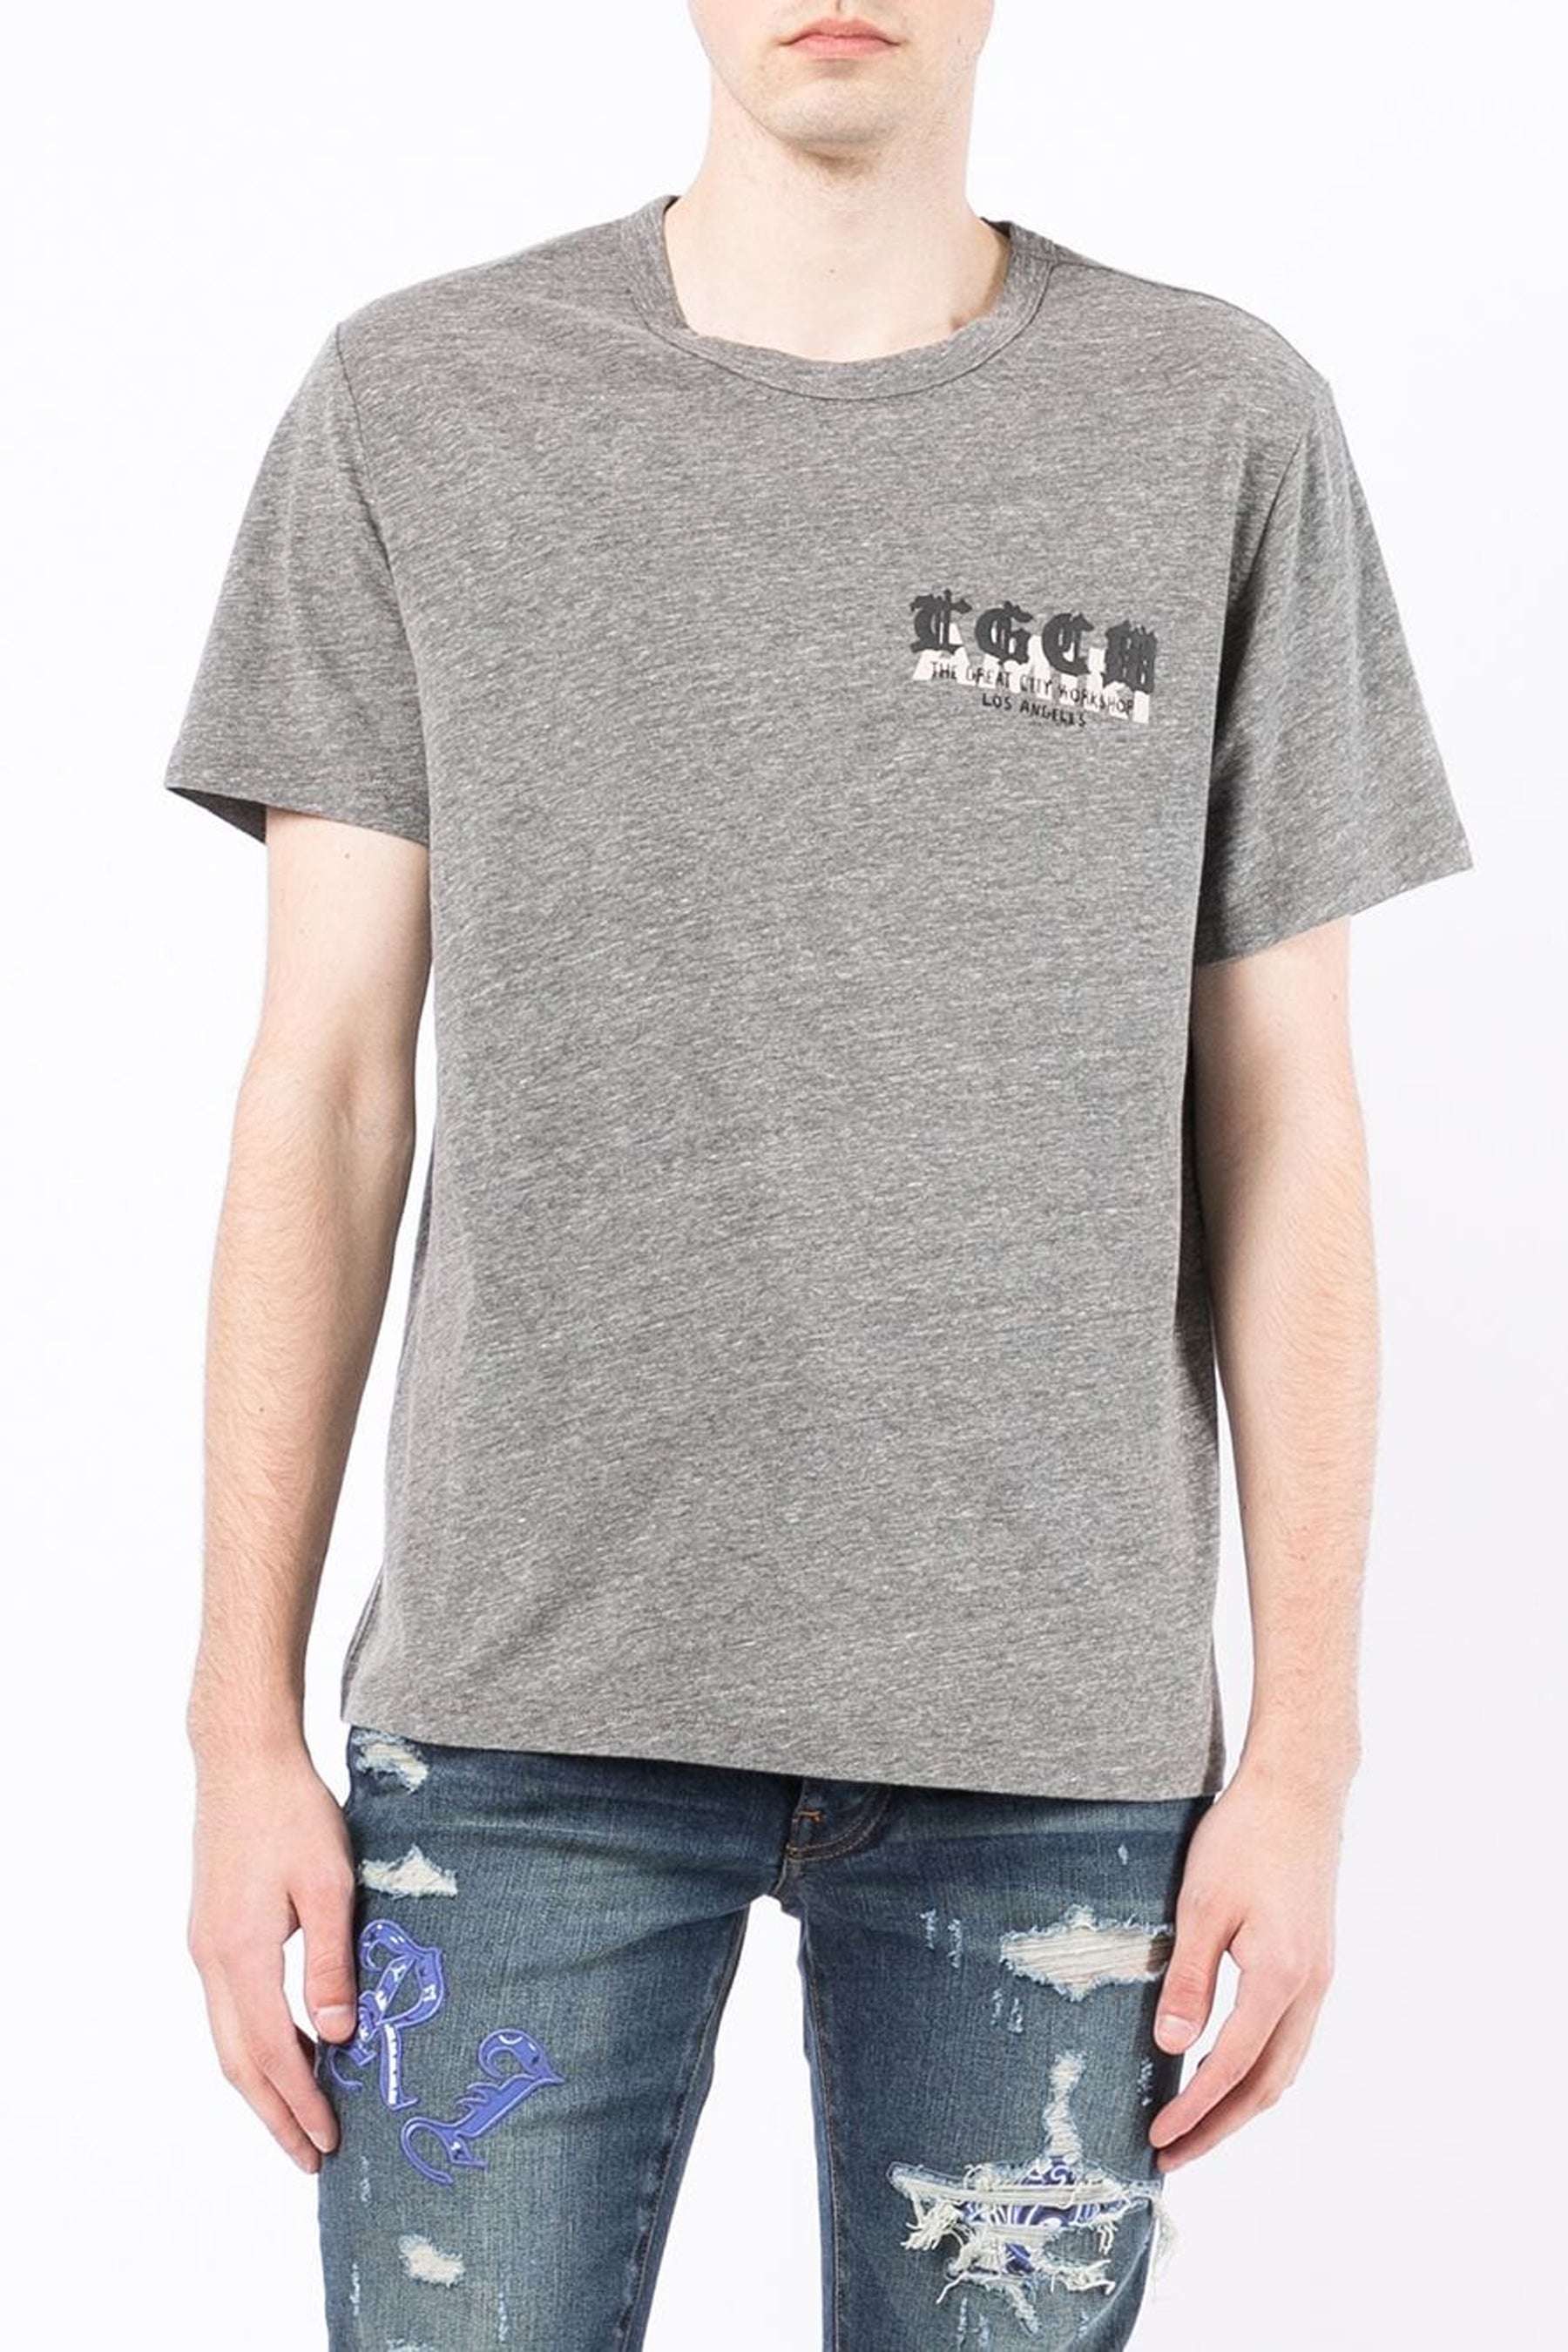 AMIRI logo-print short-sleeved T-shirt